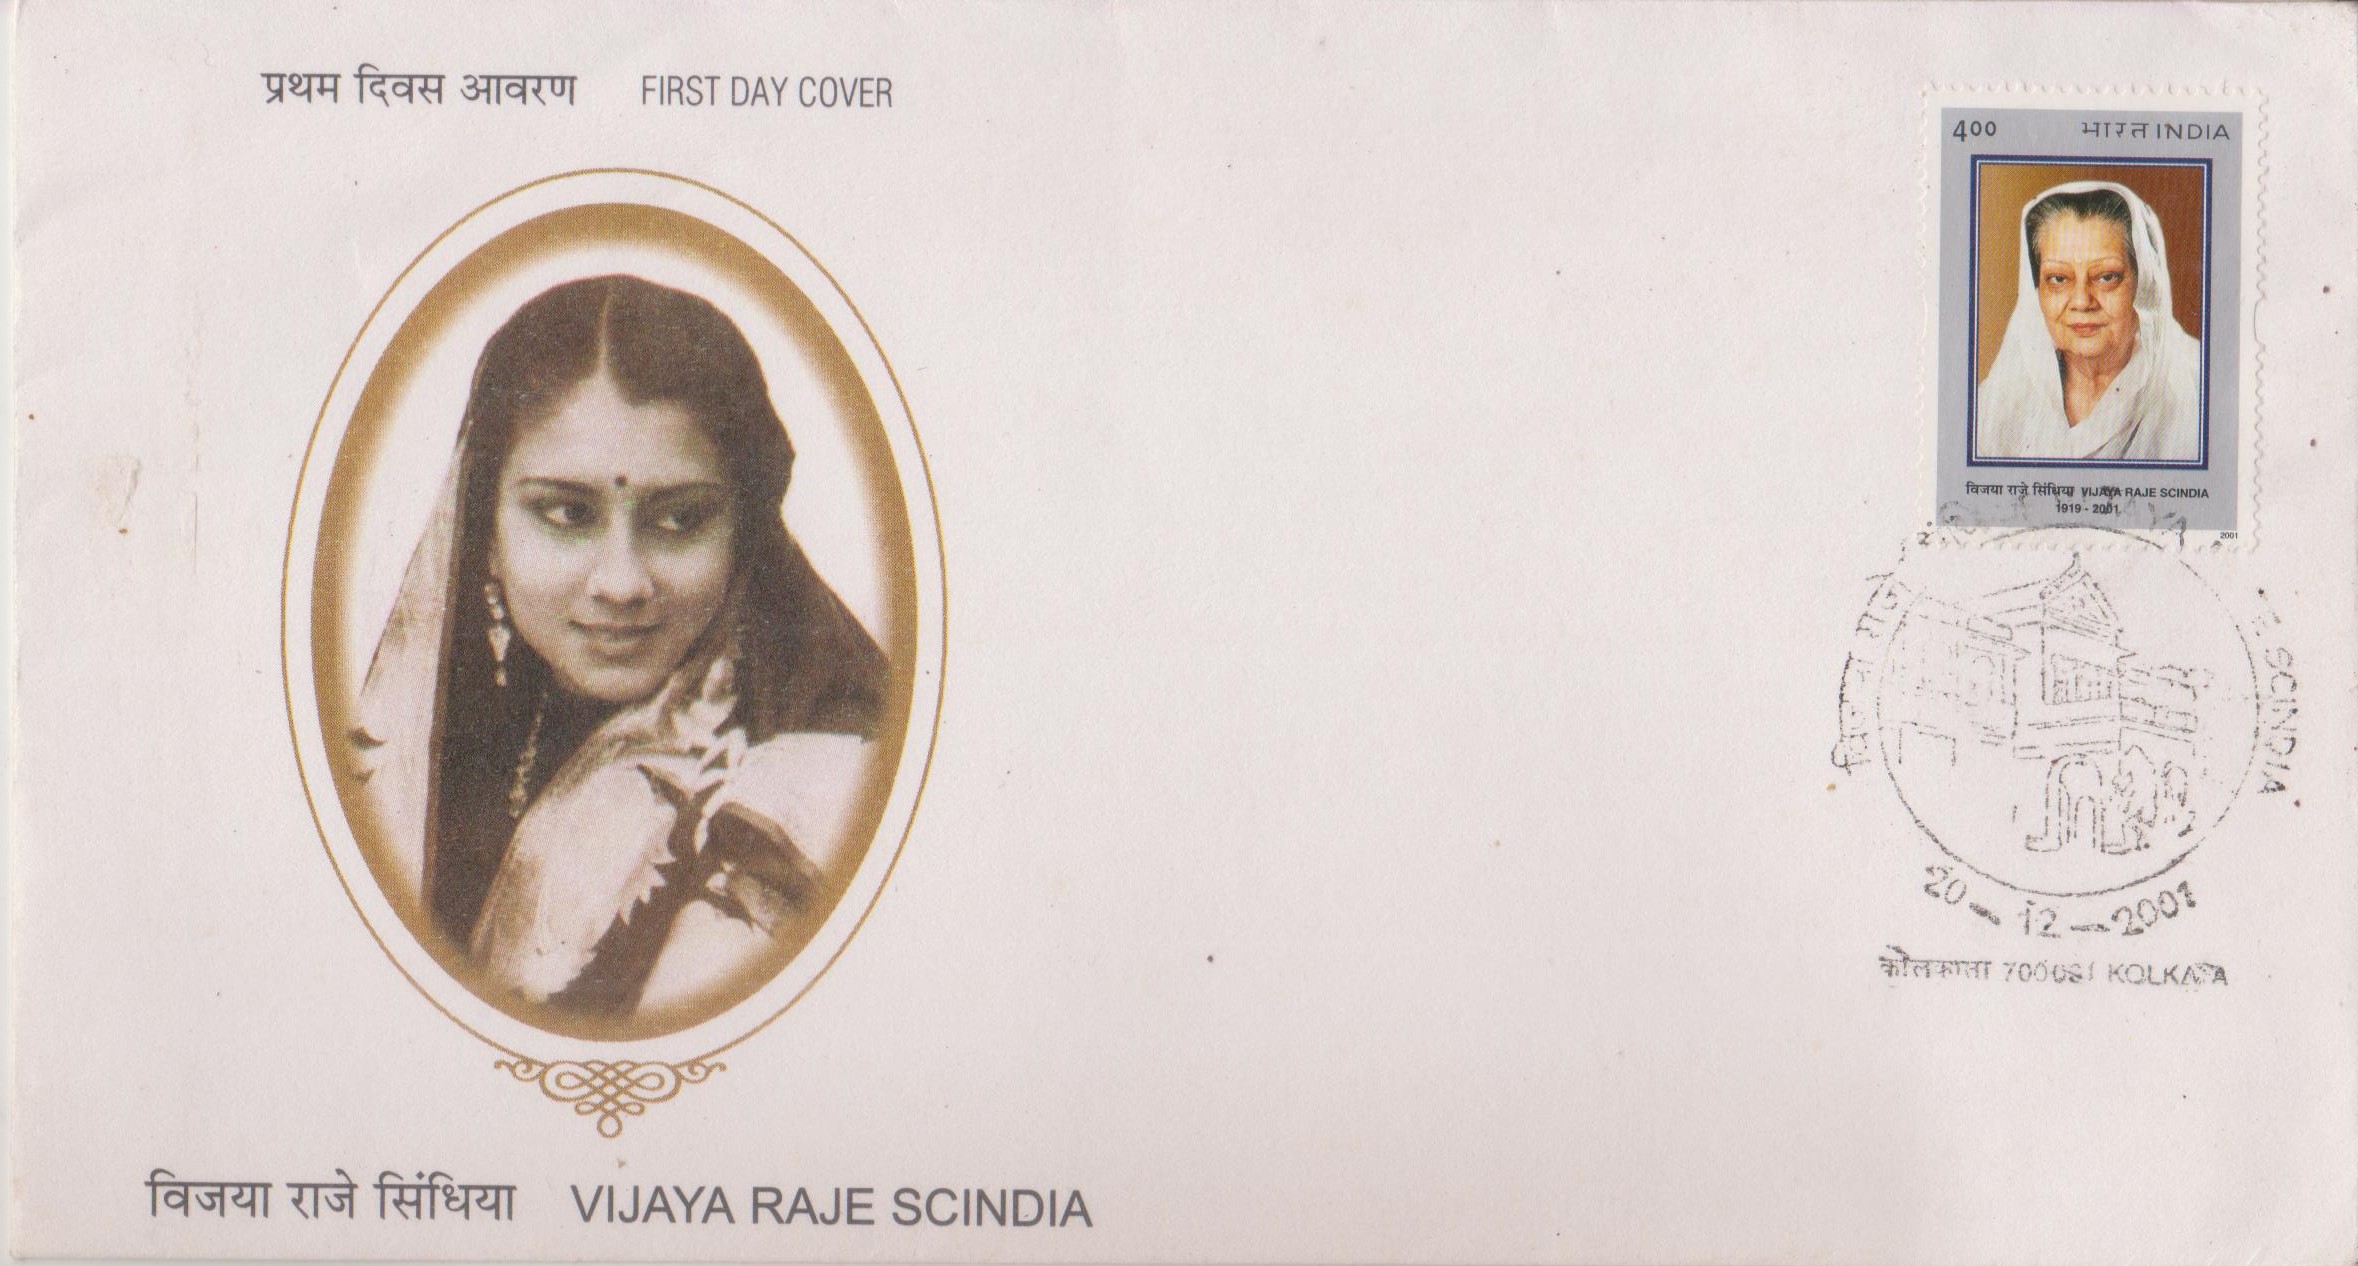 Vijaya Raje Scindia